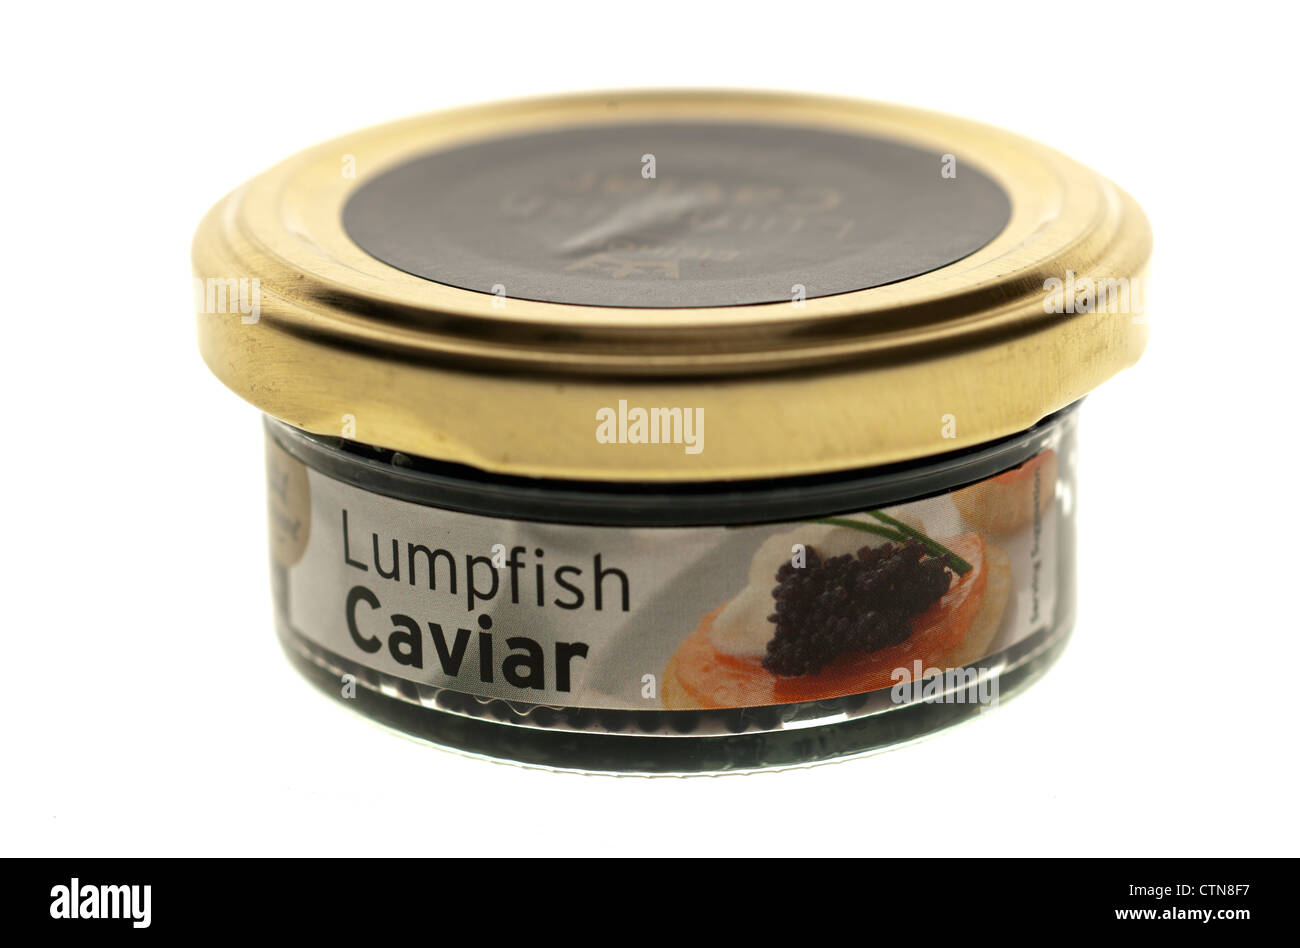 Jar of lumpfish caviar Stock Photo